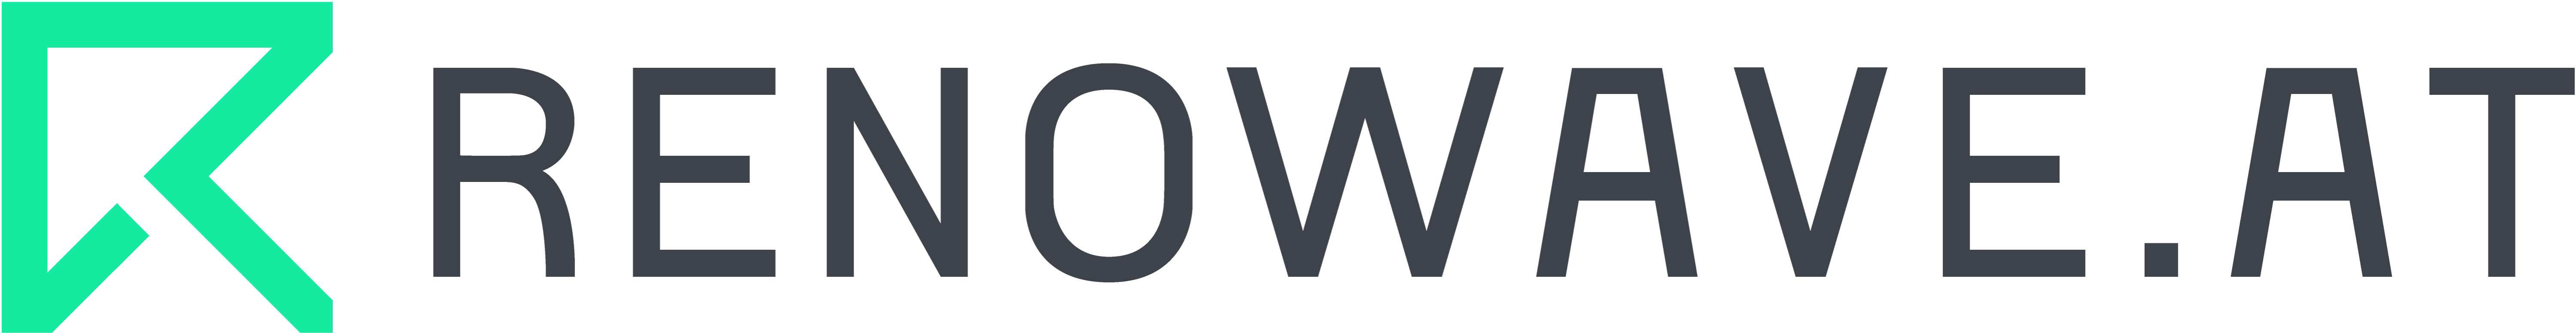 renowave logo